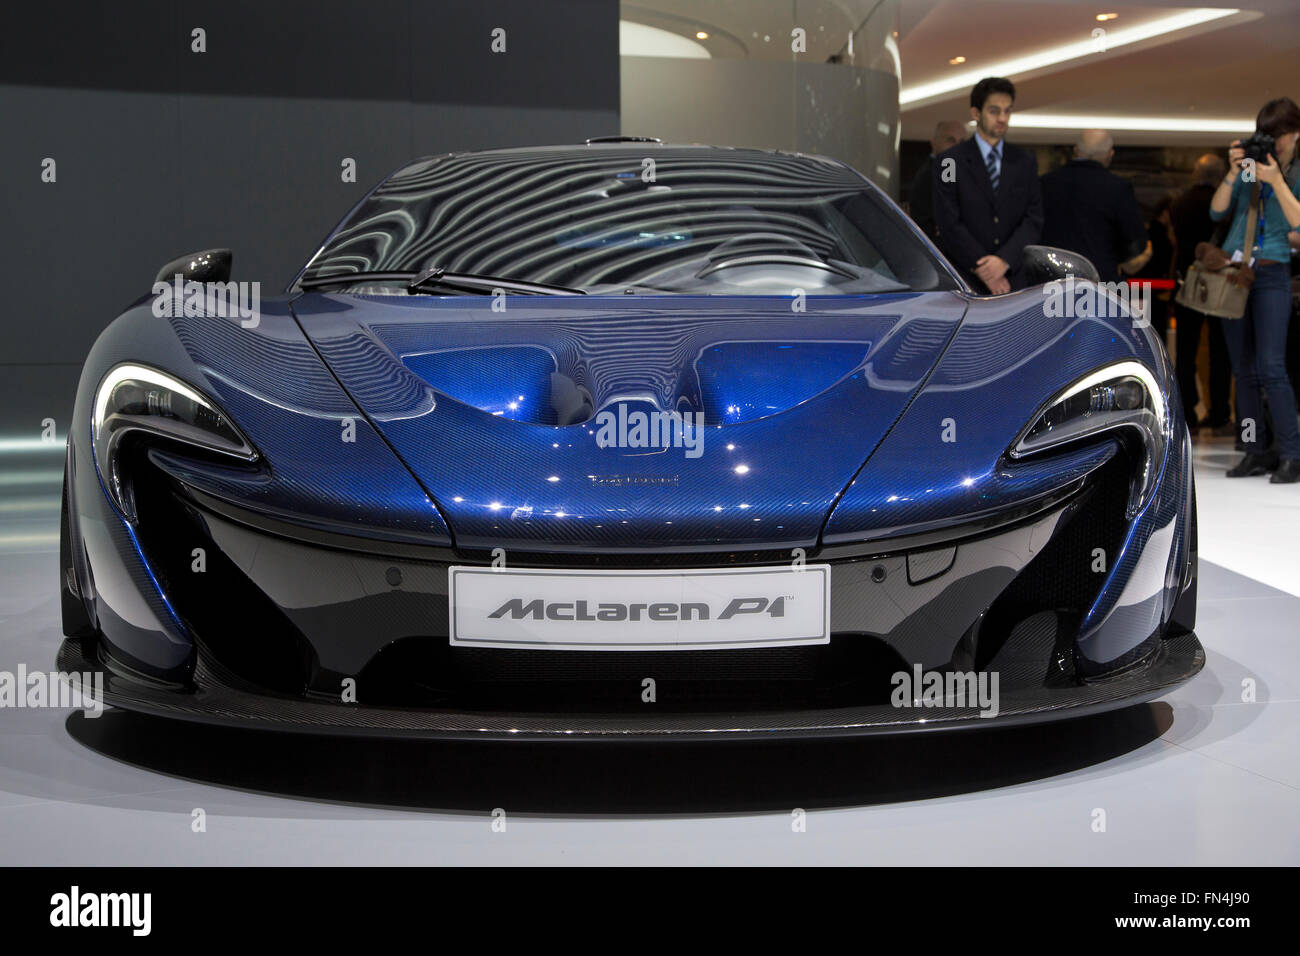 McLaren P1 supercar en el Salón del Automóvil de Ginebra 2016 Foto de stock